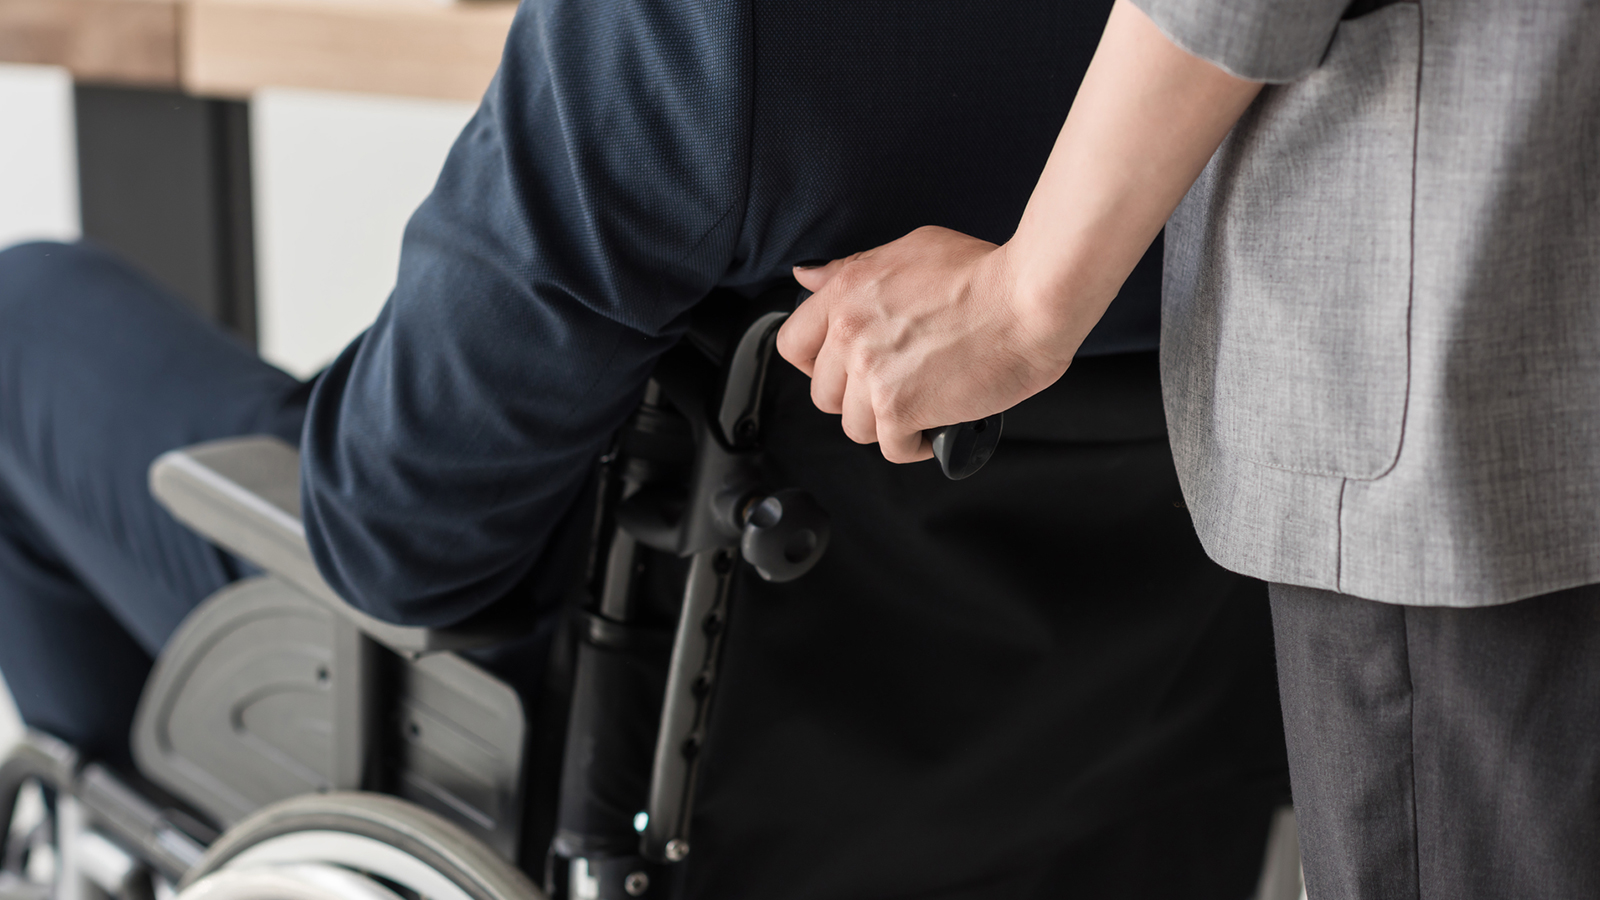  Accompagnement des personnes en situation de handicap et des personnes souffrants d'une maladie longue